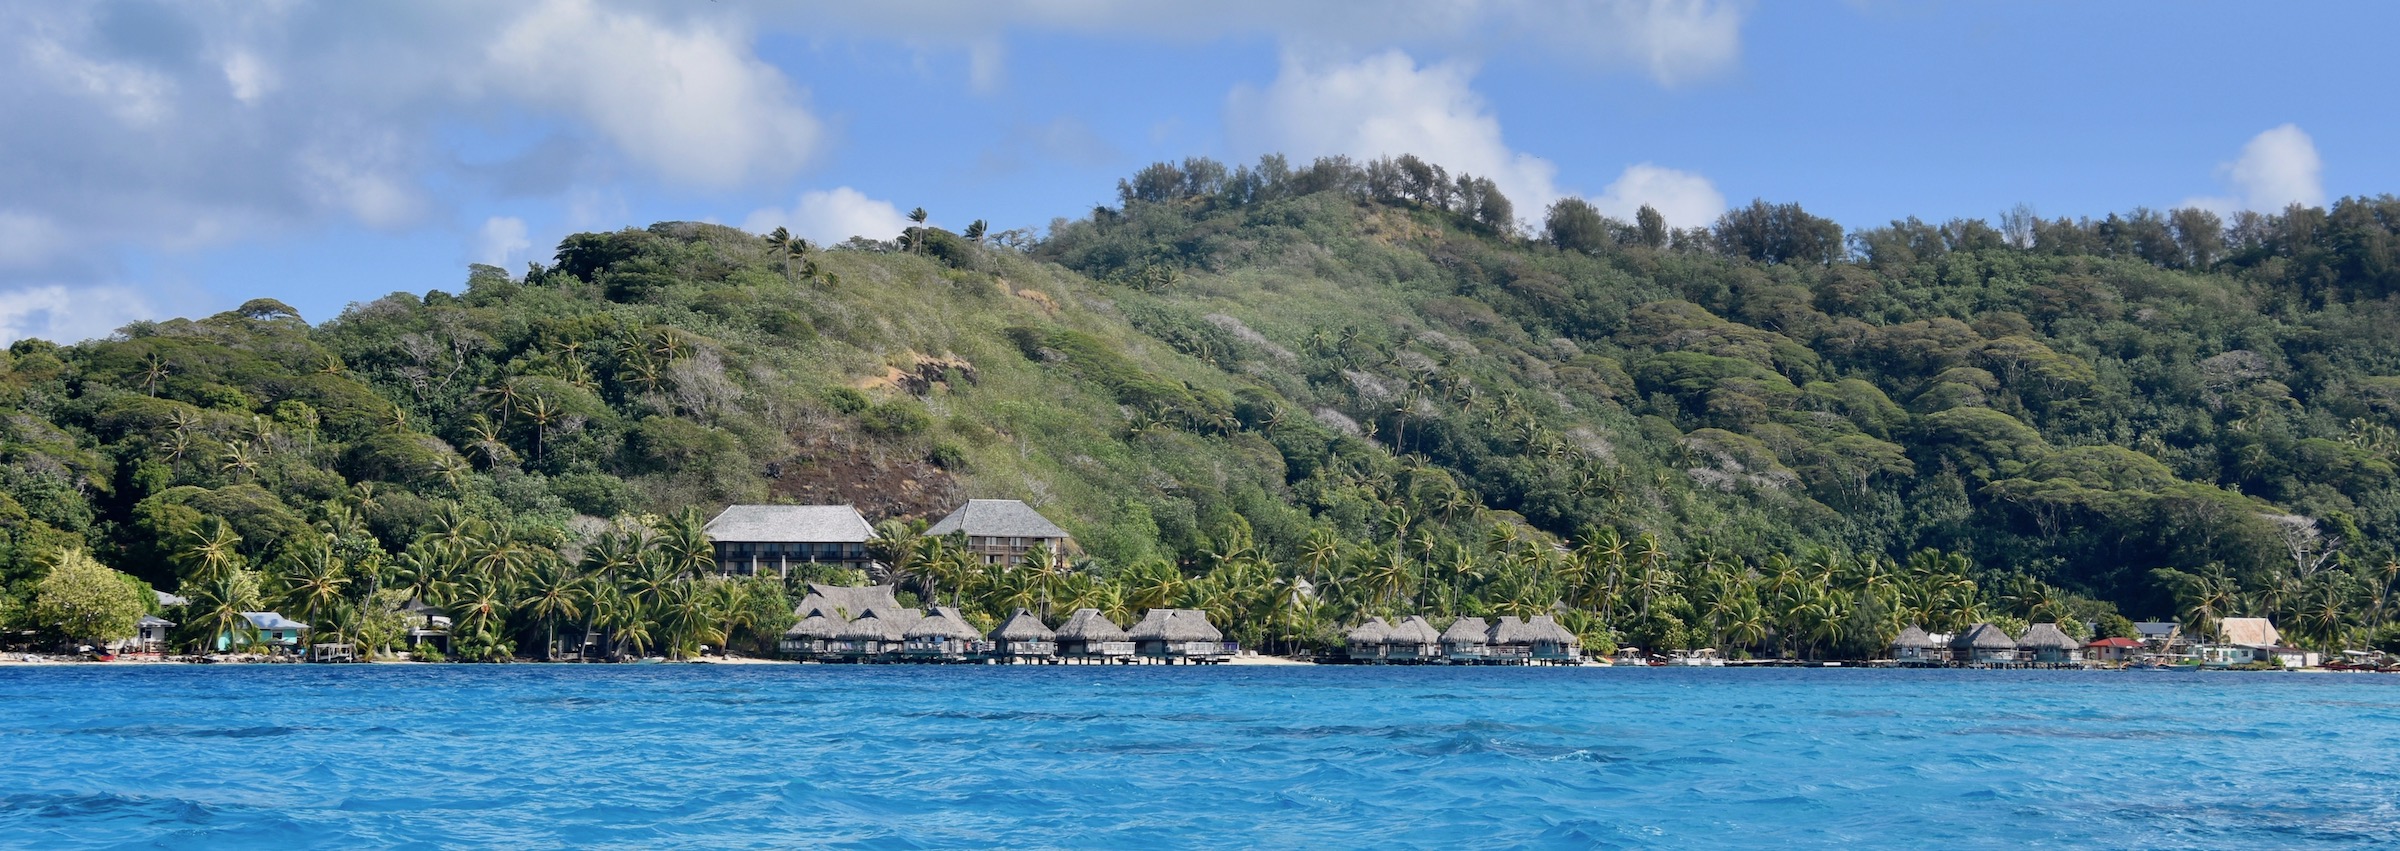 Maitai Resort, French Polynesia